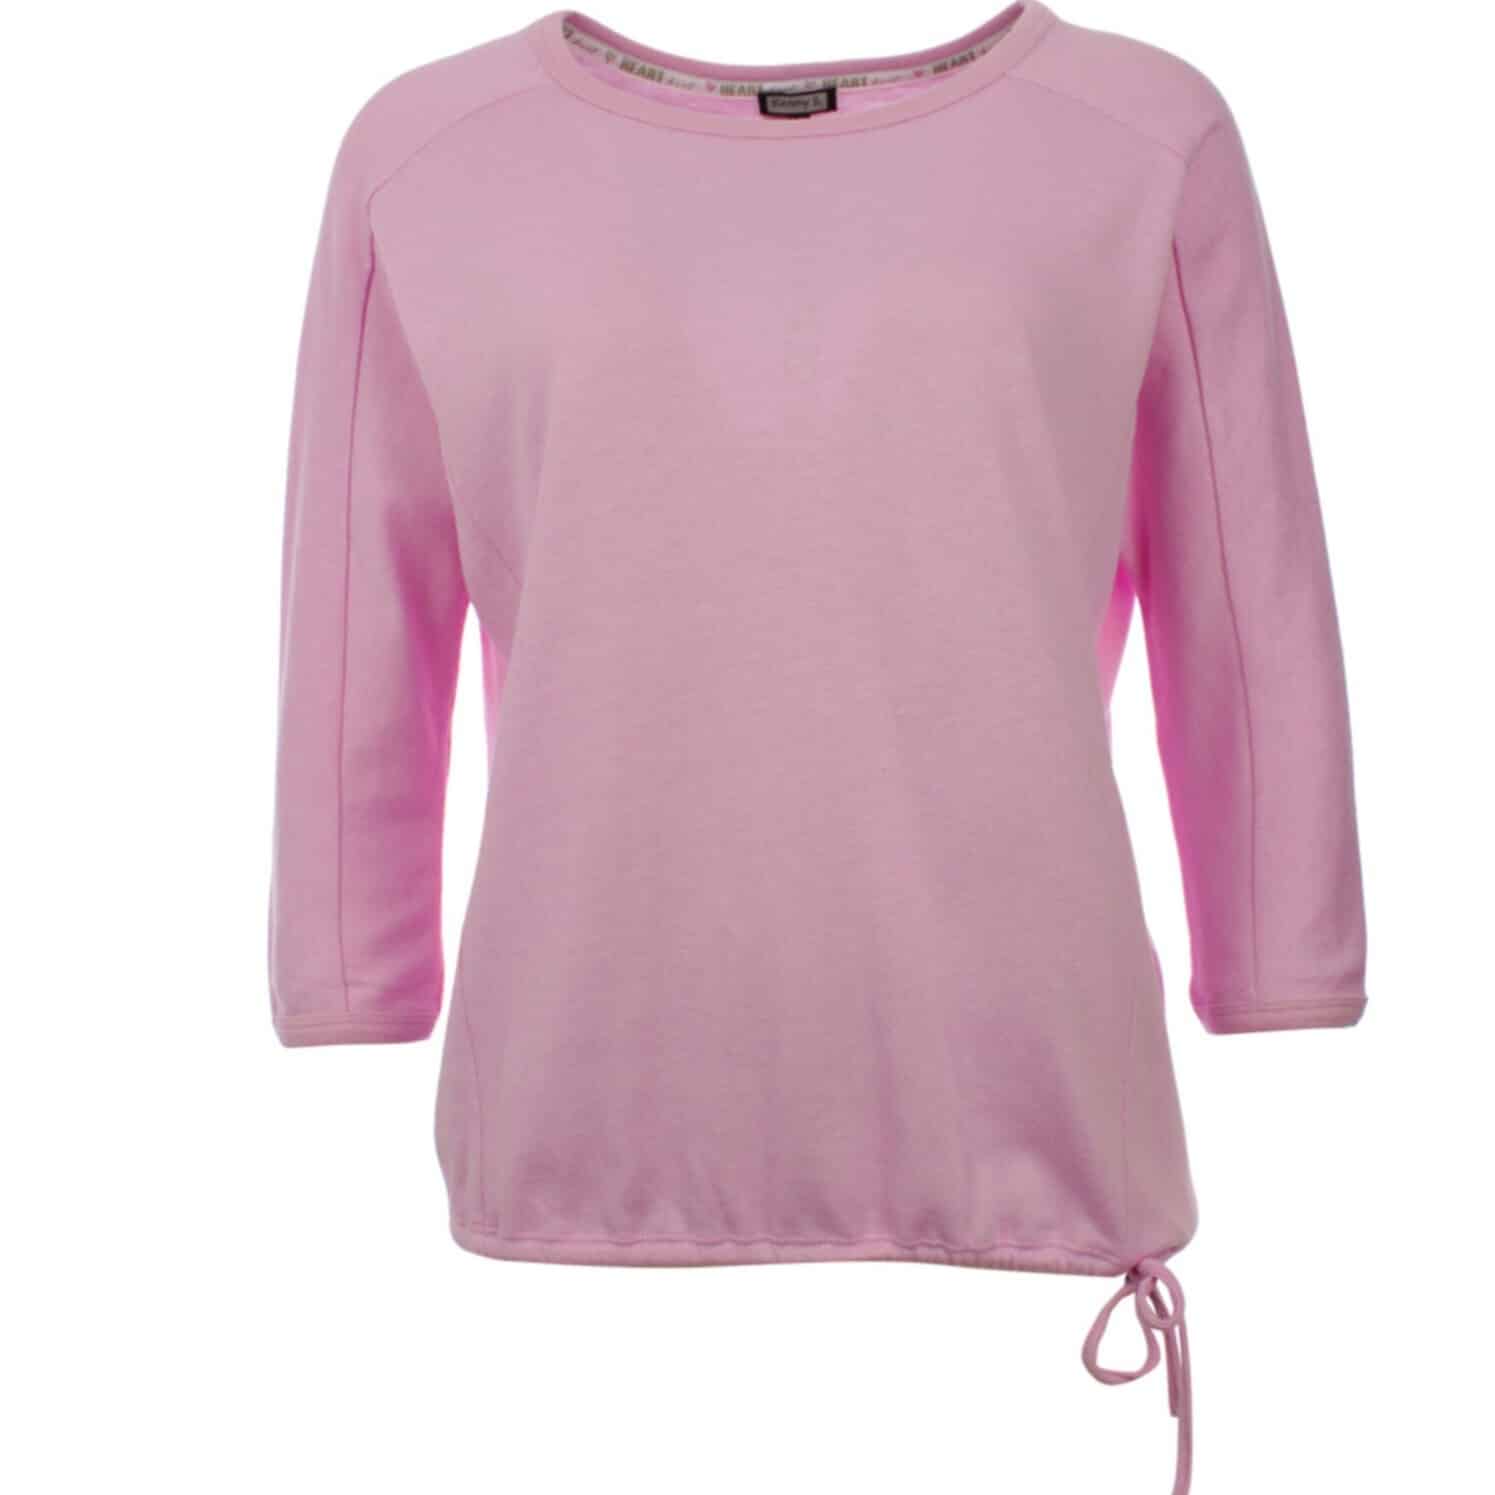 Leichter 3/4 Arm Pullover von KennyS Artikel 509764 inzartem rosa in blusiger Form und Raglanarm bei Mode Sabine Lemke in Winnenden oder im Onlineshop einkaufen!